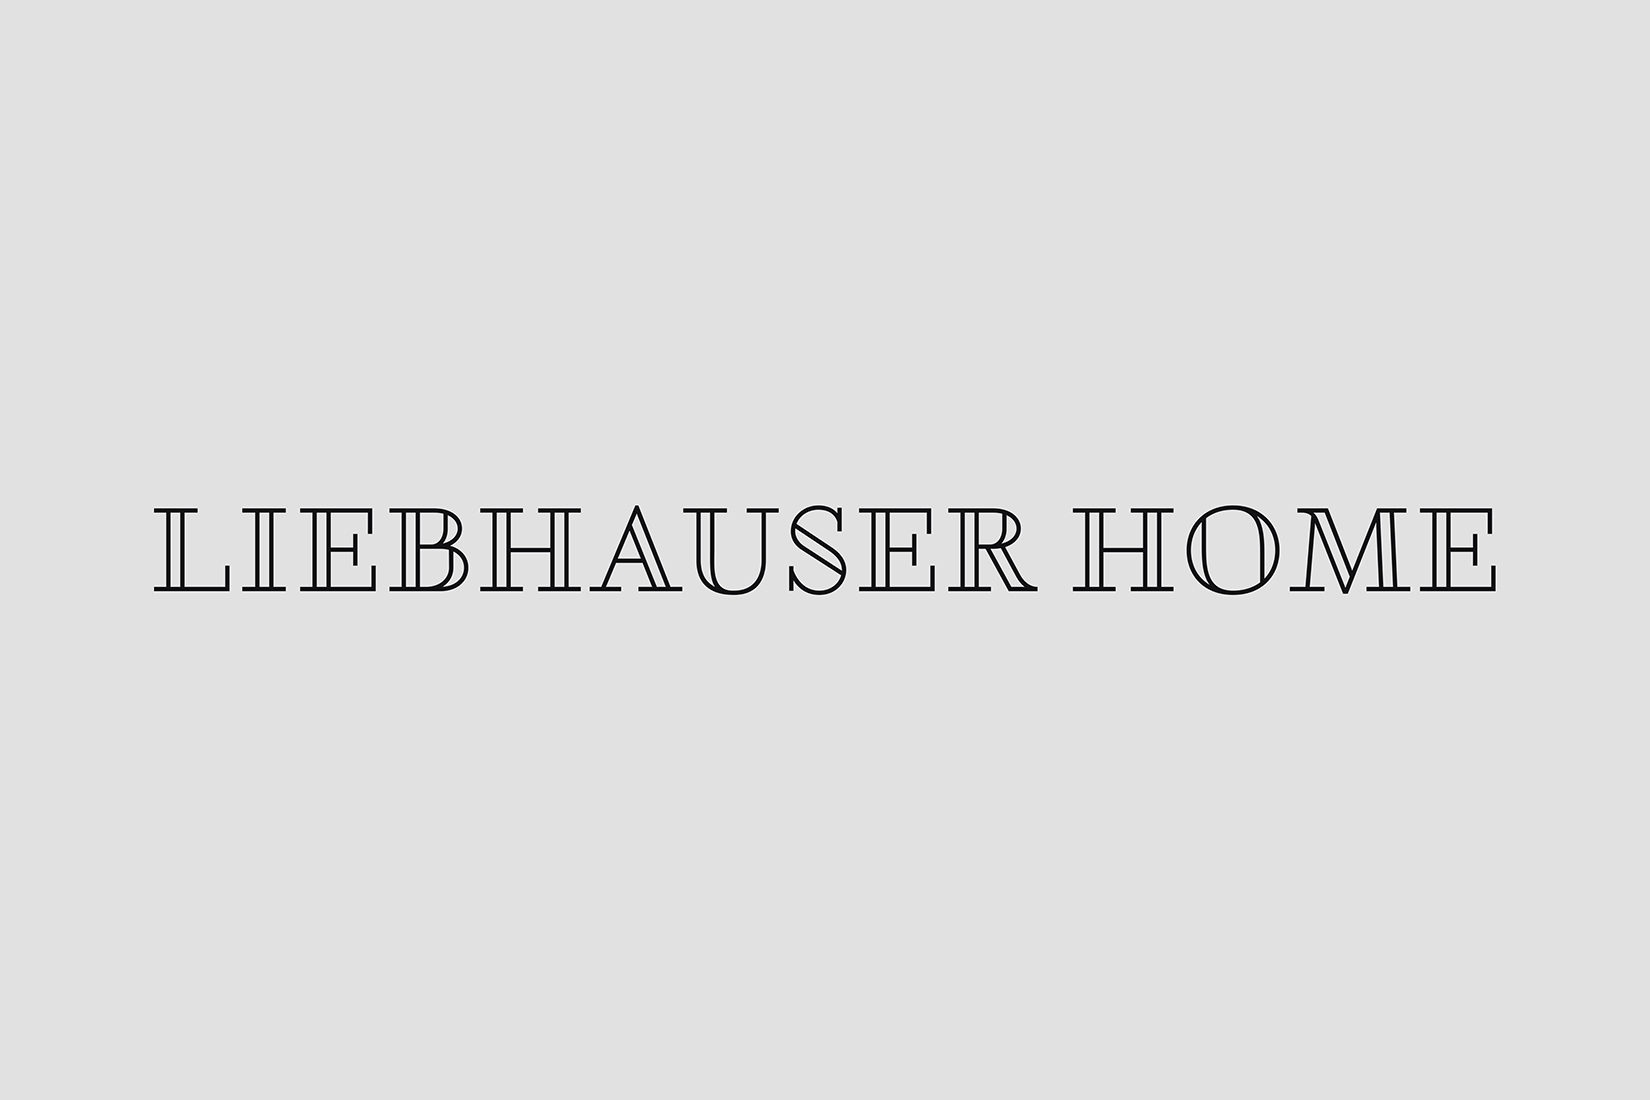 Liebhauser Home